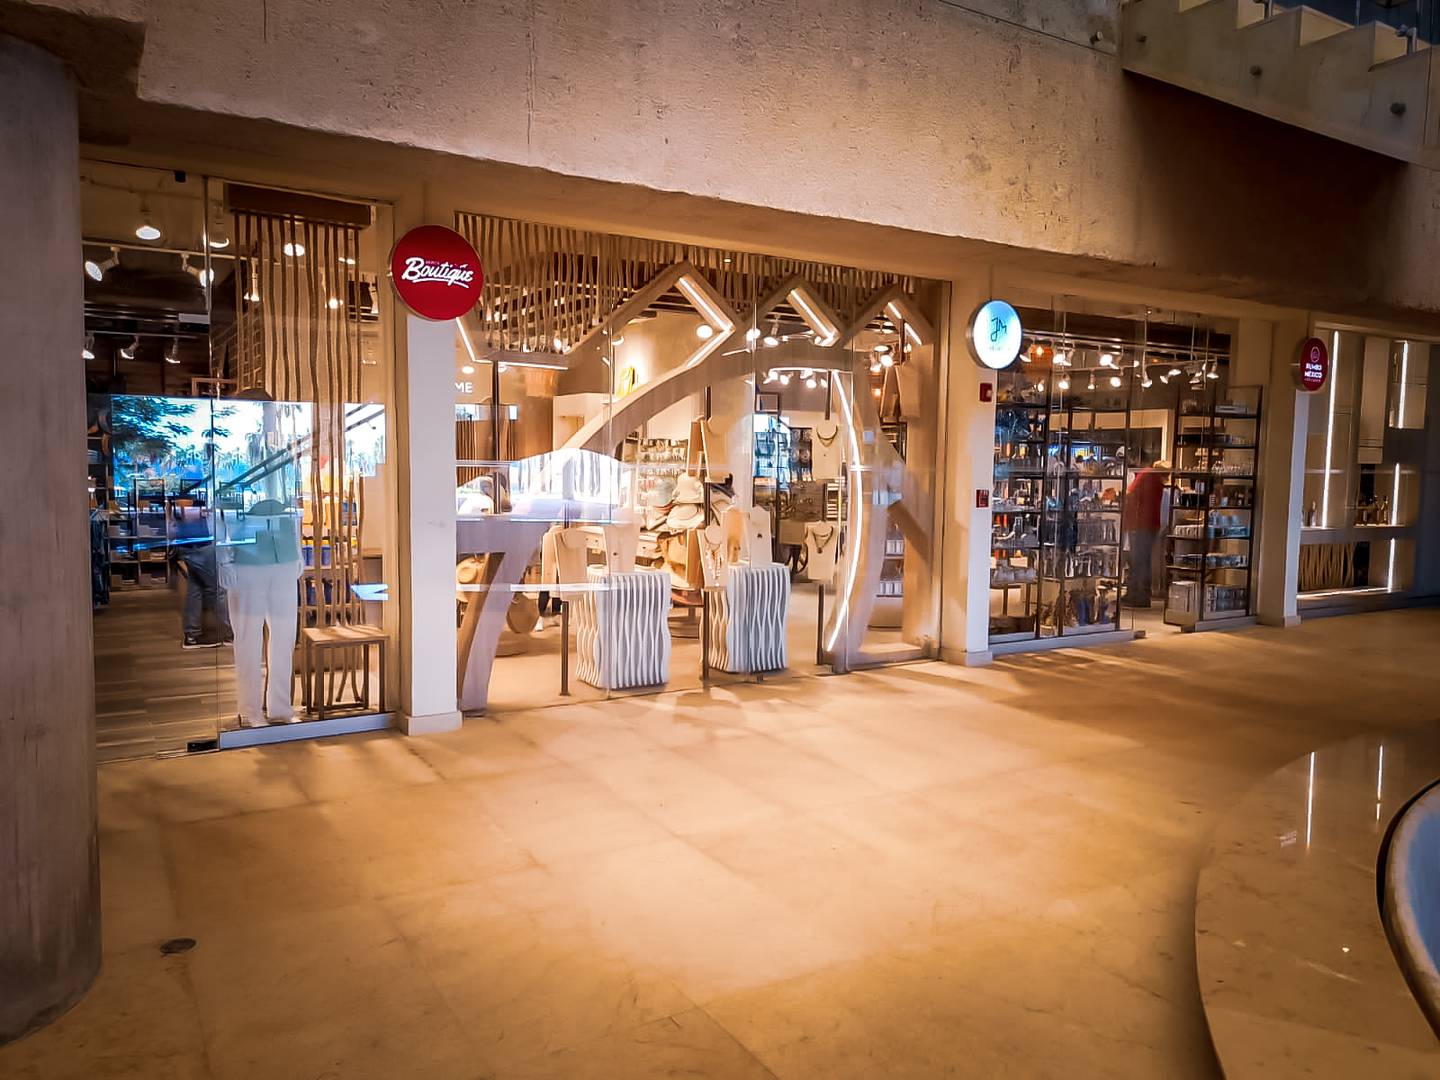 Morpho Travel Retail explicó que con cada apertura de tienda se crean conceptos sobresalientes, que impulsan la cultura de cada país donde se ubican los puntos de venta. Foto: Cortesía